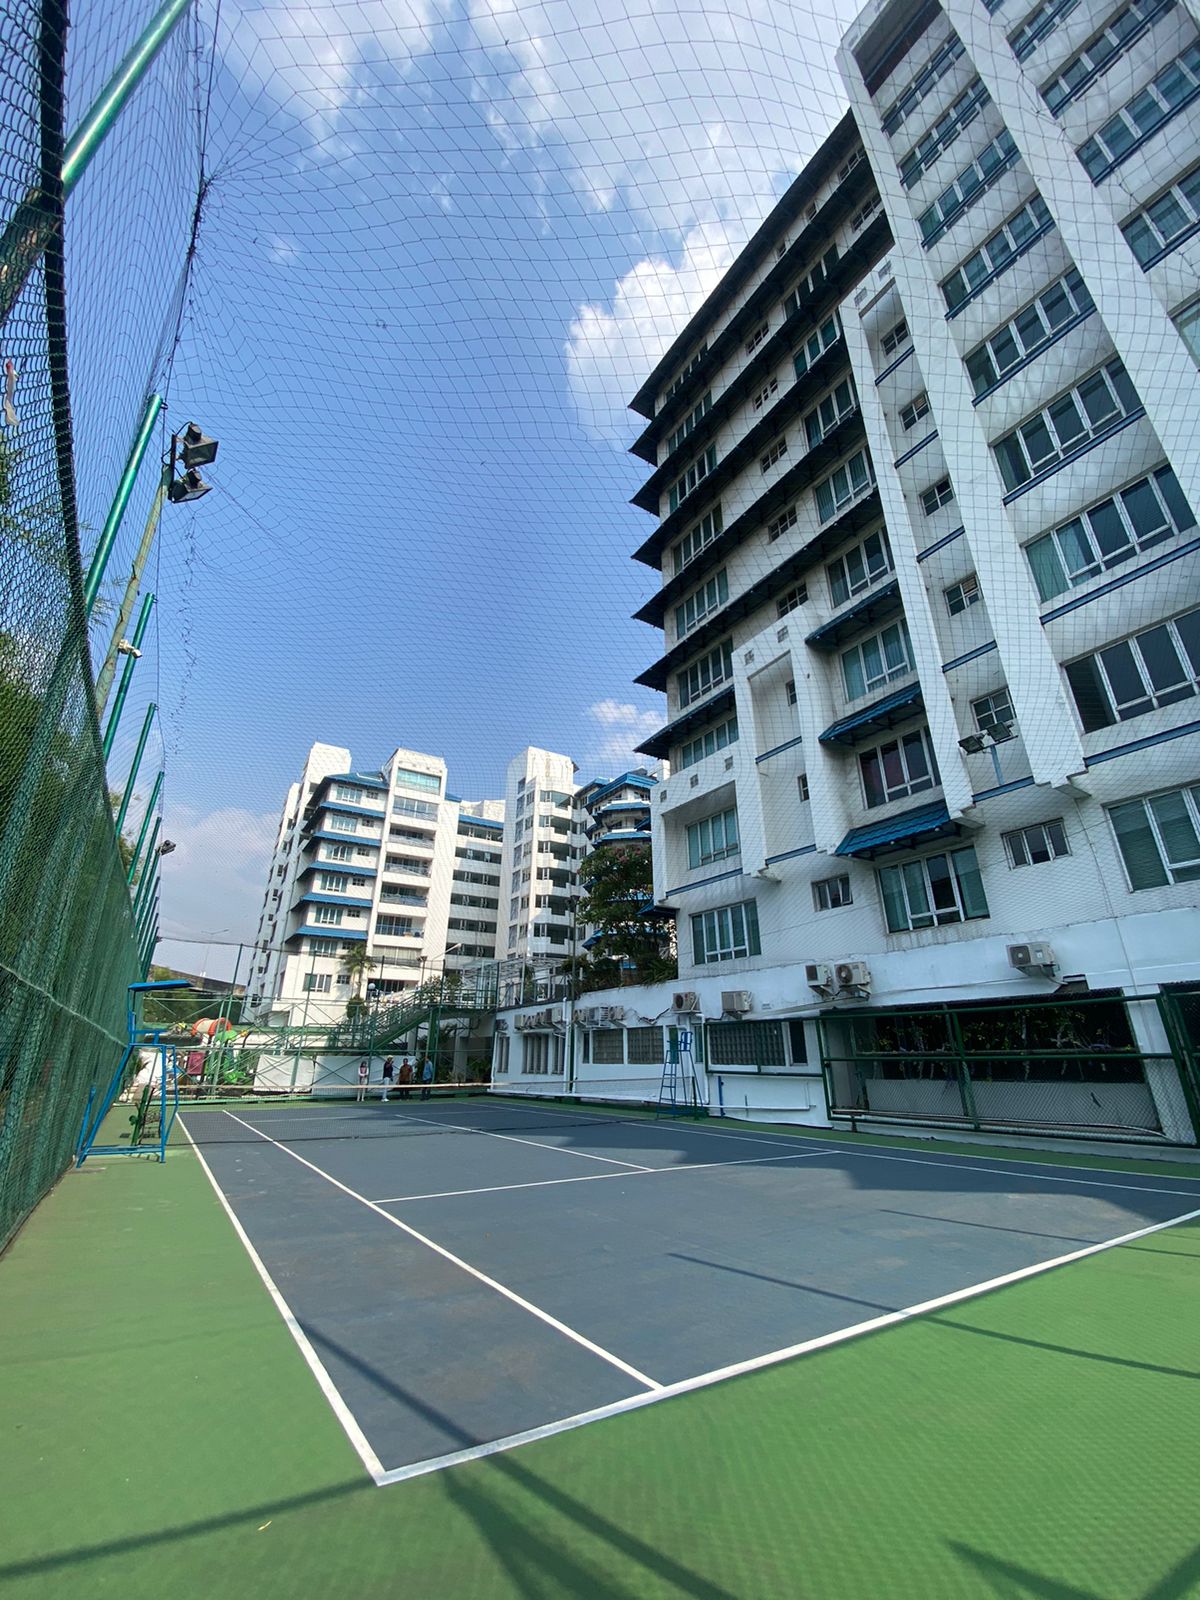 Lapangan Gameon Apartemen Brawijaya Lapangan Tennis